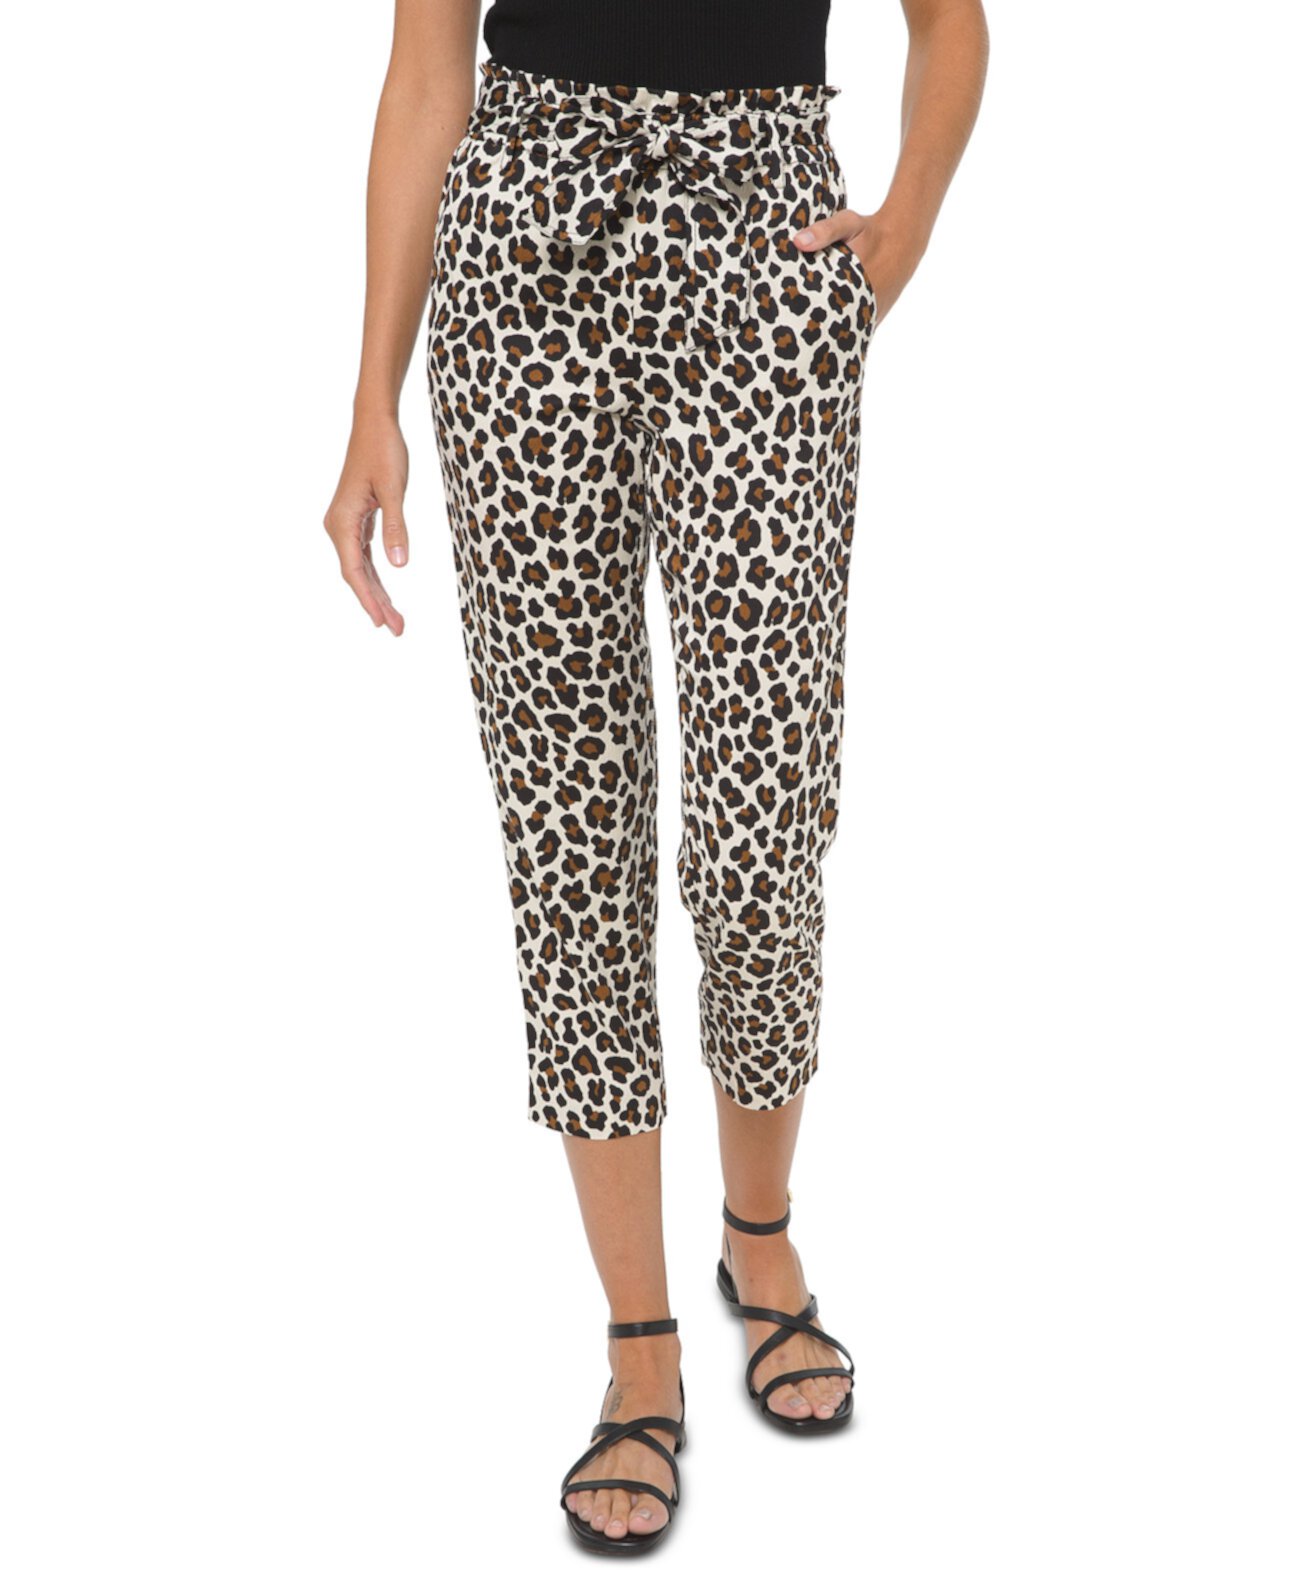 Укороченные брюки в стиле бумажных мешков с леопардовым принтом, обычных и миниатюрных размеров Michael Kors